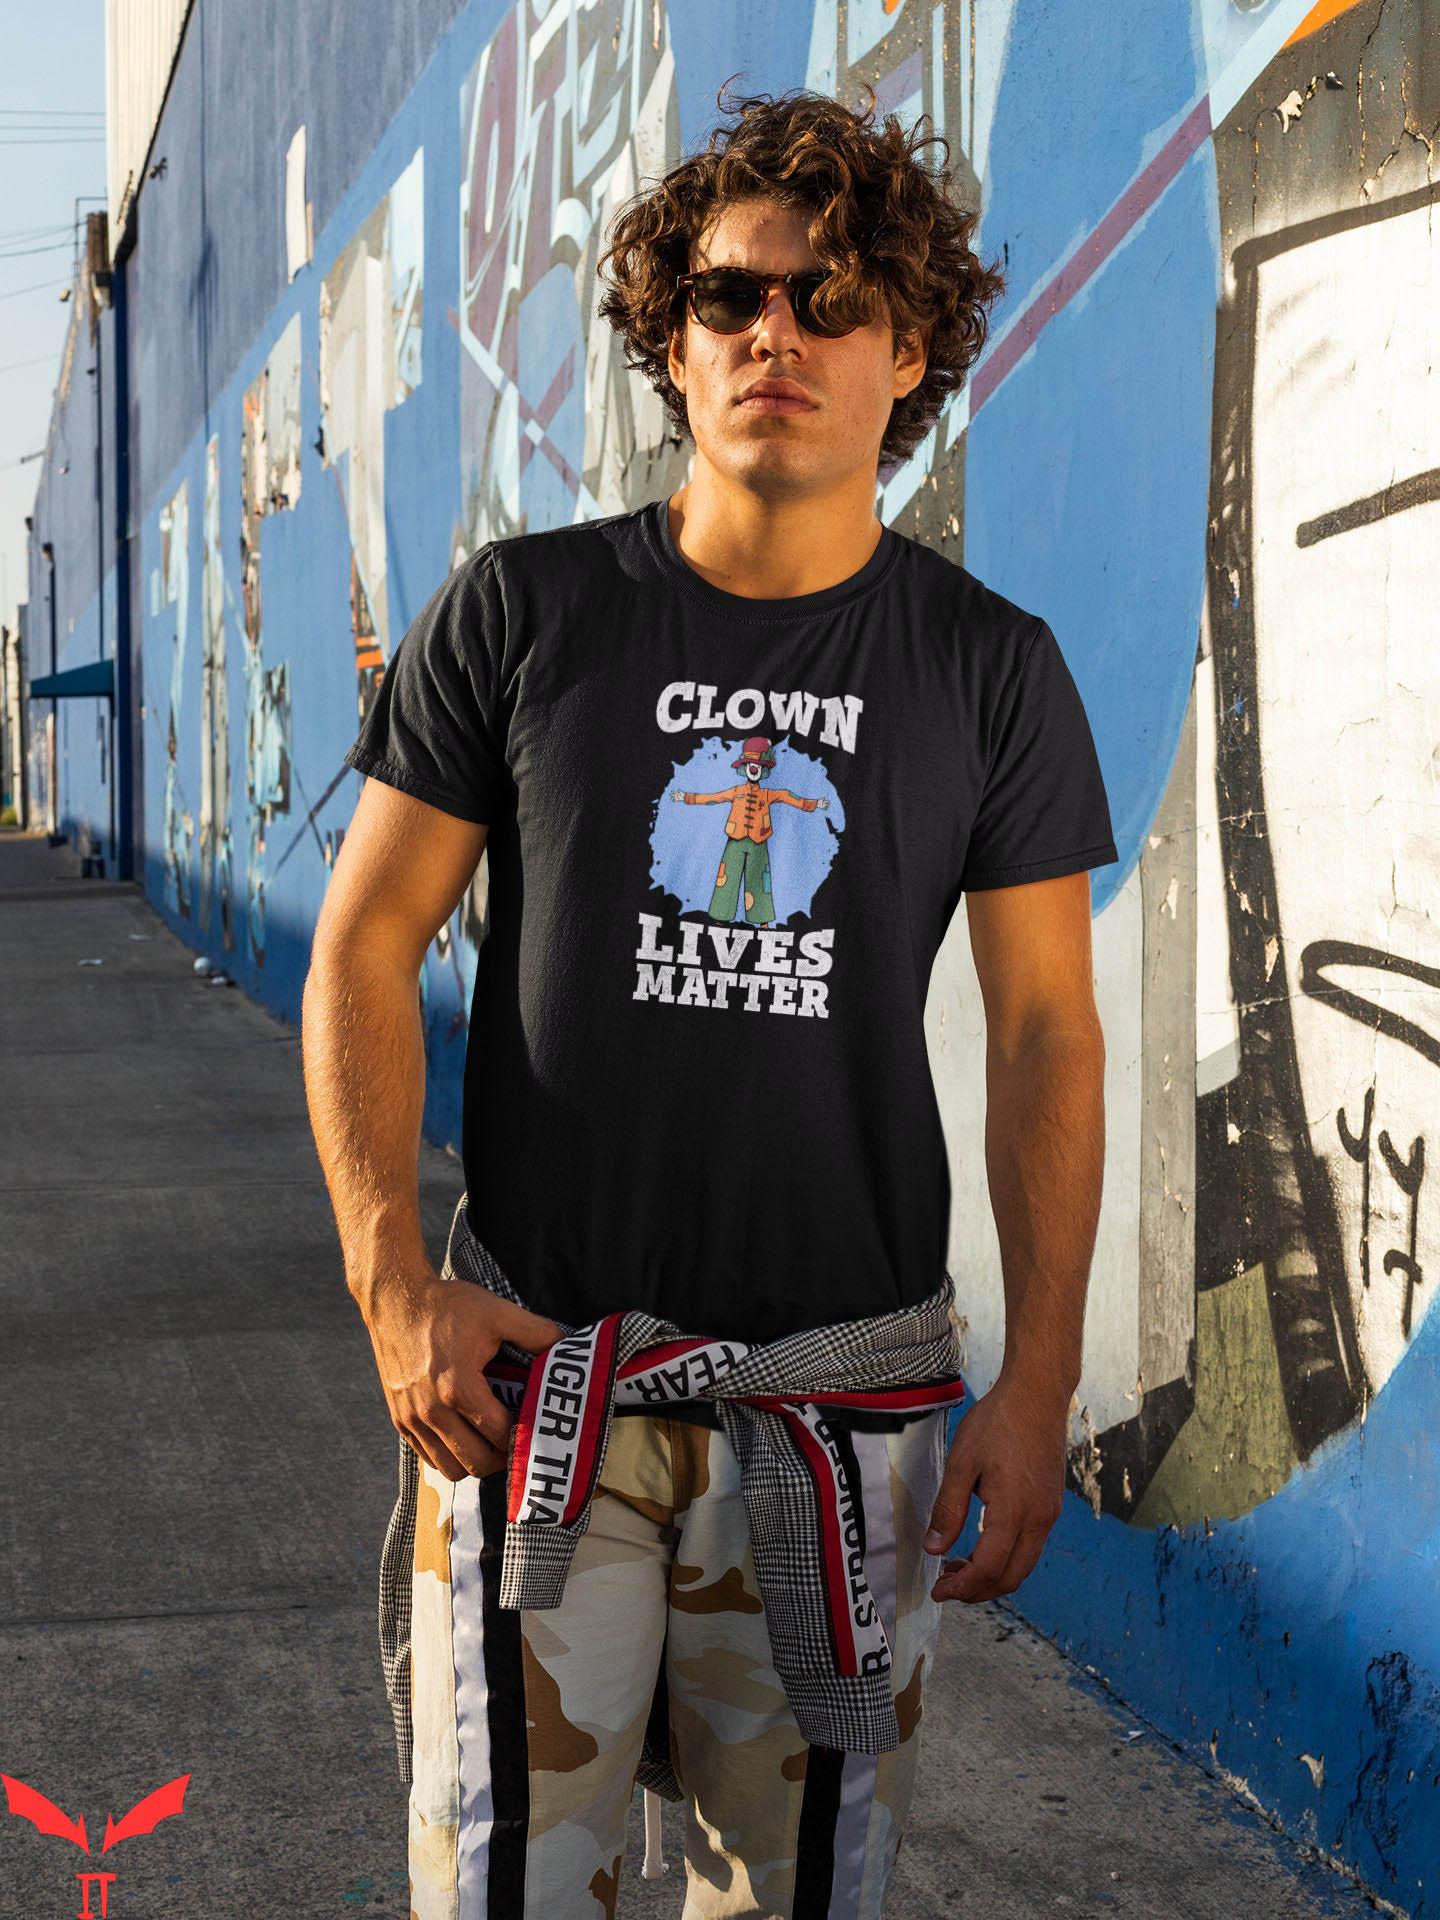 IT The Clown T-Shirt Clown Lives Matter Scary Clownery